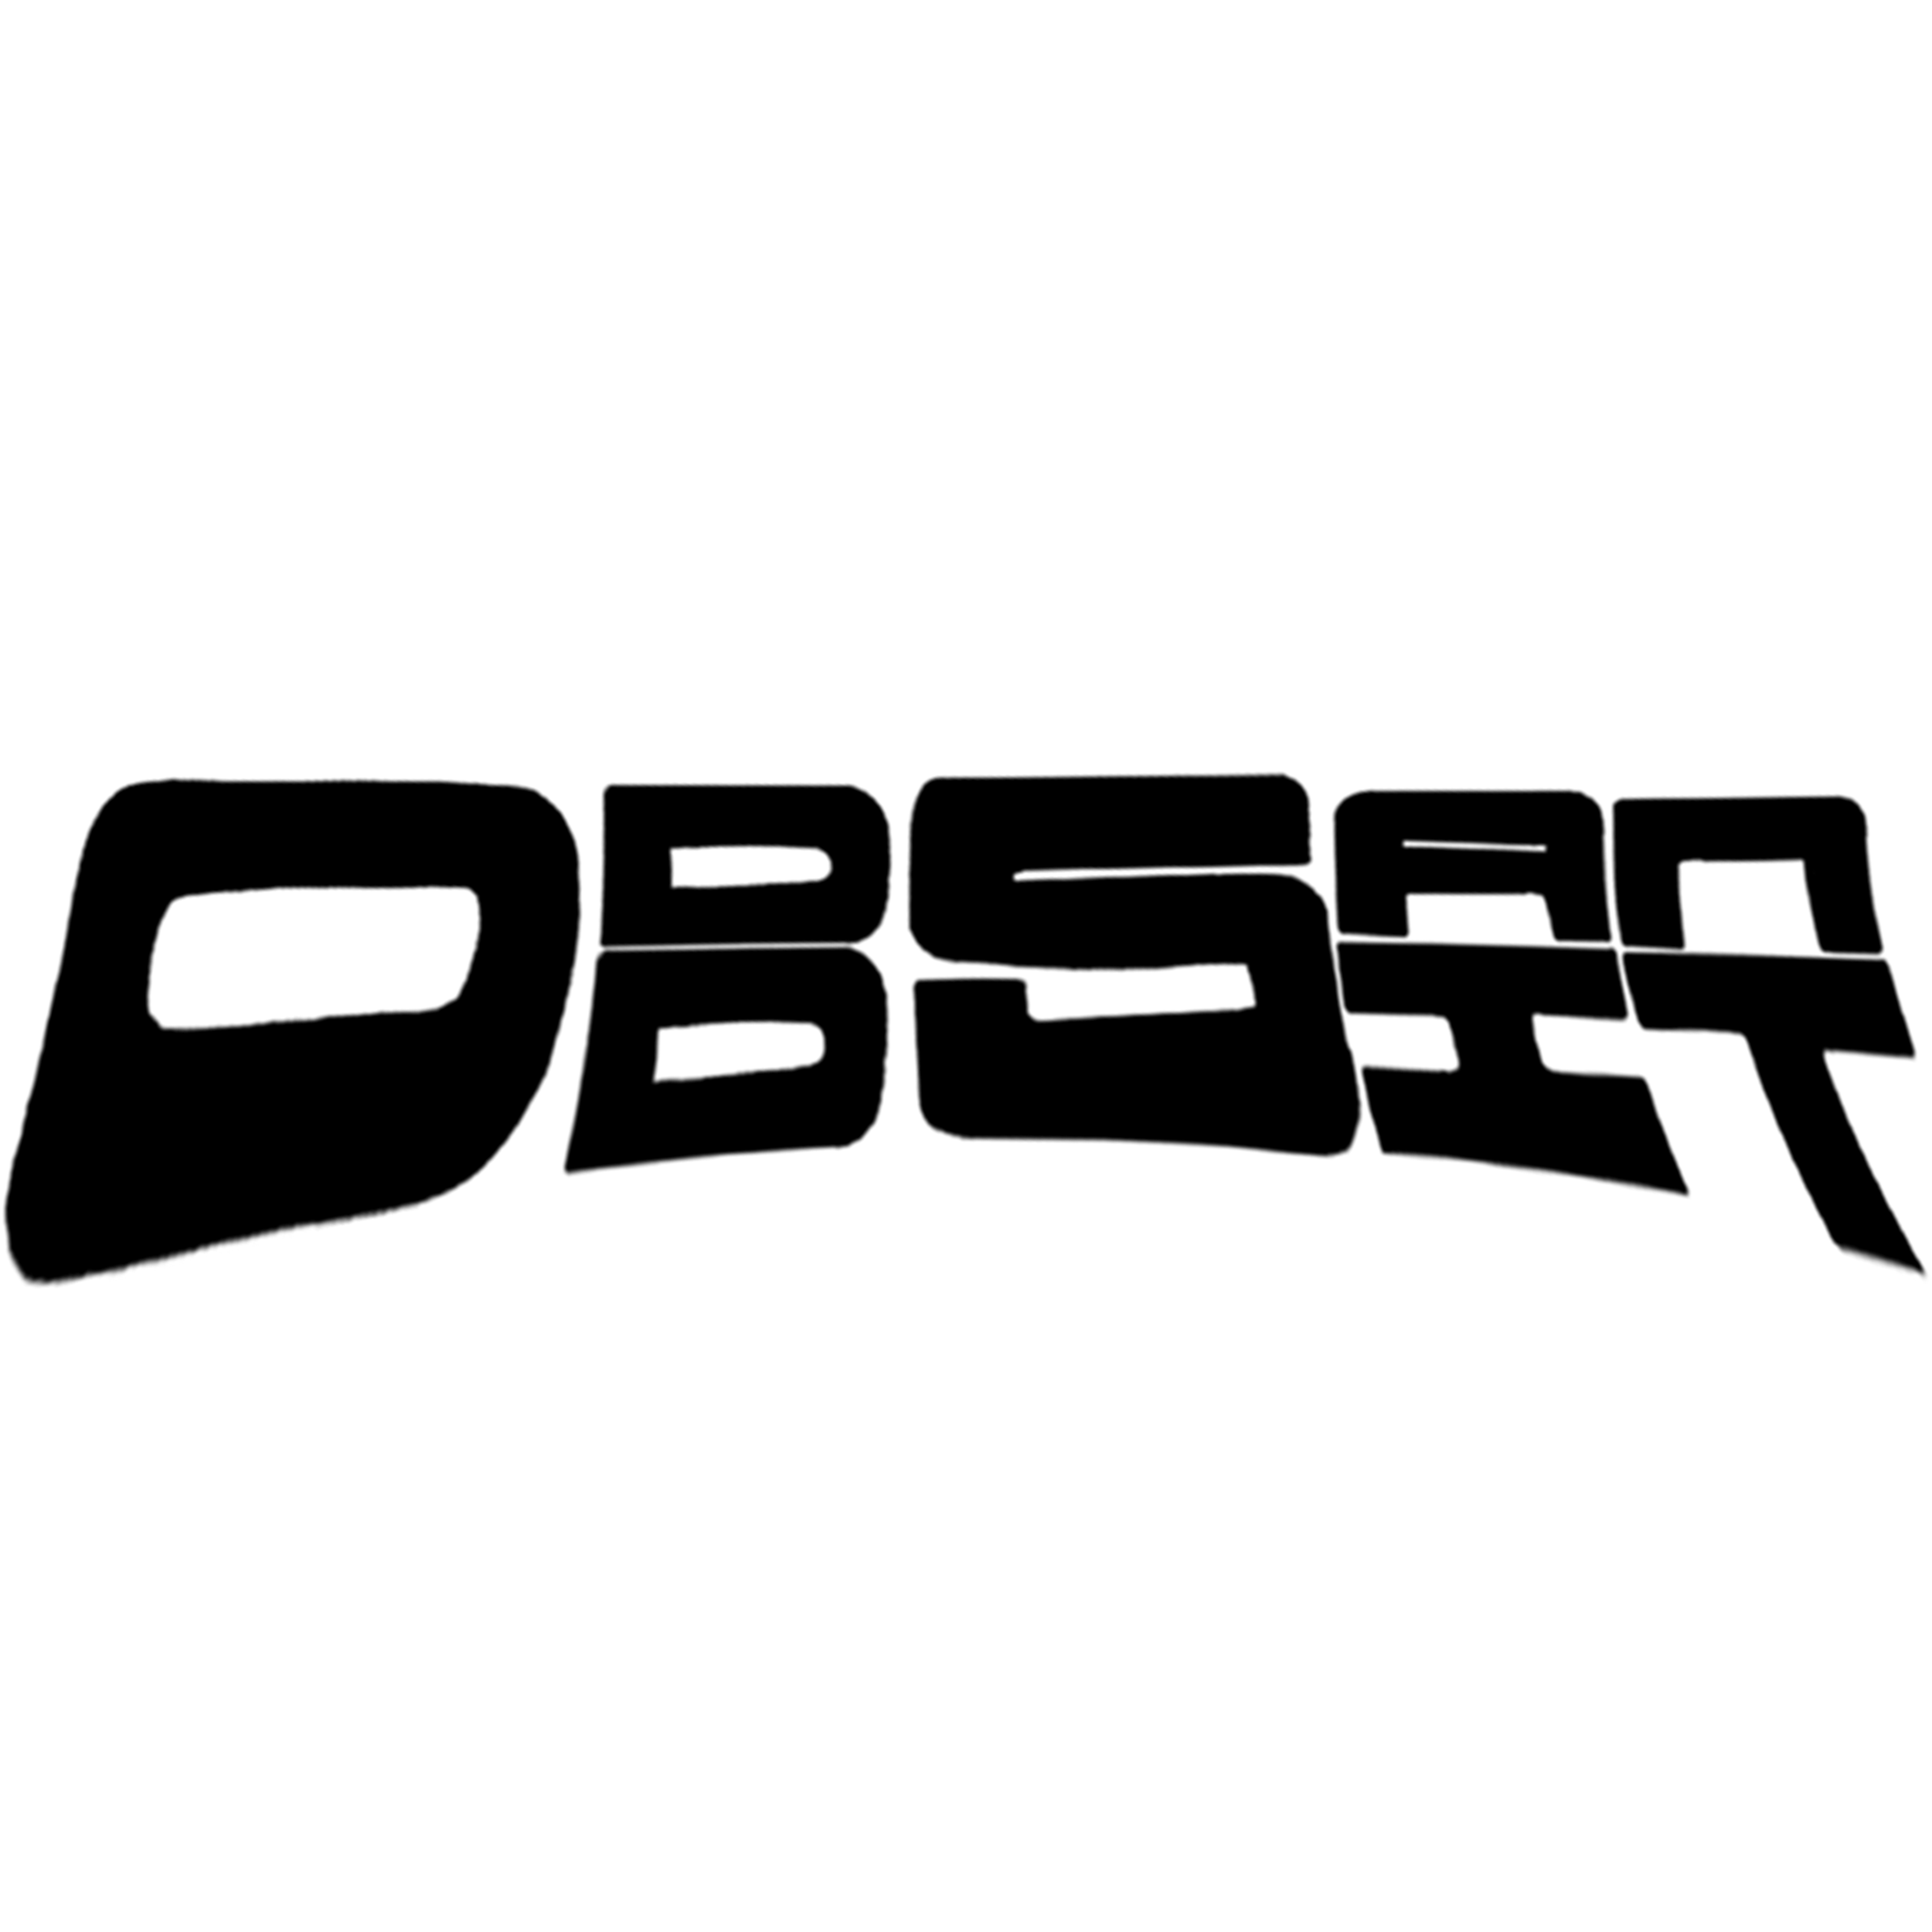 ᵴ ᵴ ᵴ Black Logo Mesh Shorts – stainedsoulsociety